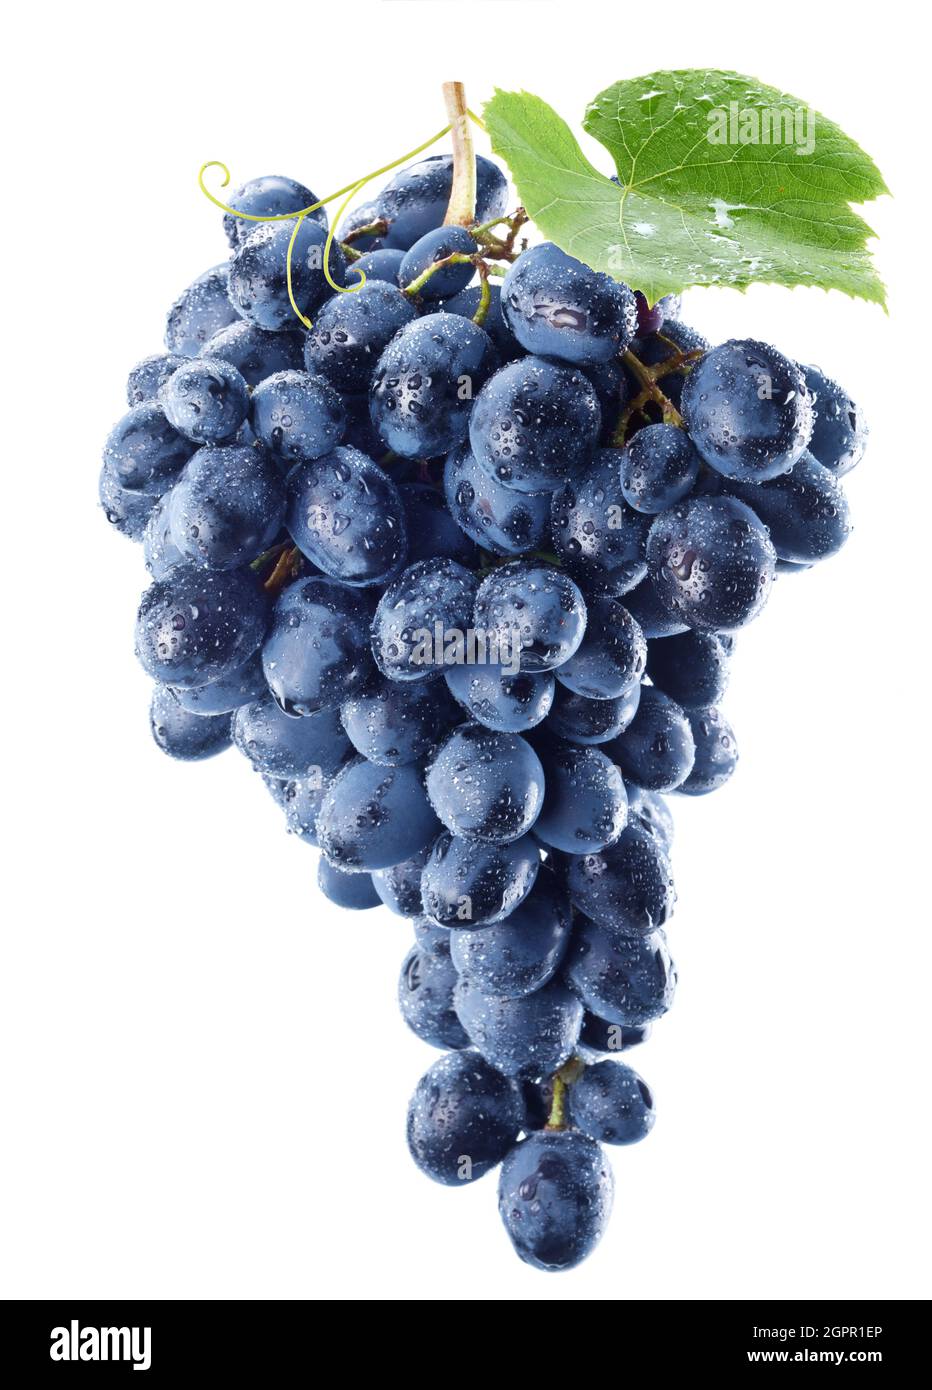 Ein Bund blauer Trauben in Wassertropfen mit einem Traubenblatt, das auf  weißem Hintergrund isoliert ist Stockfotografie - Alamy